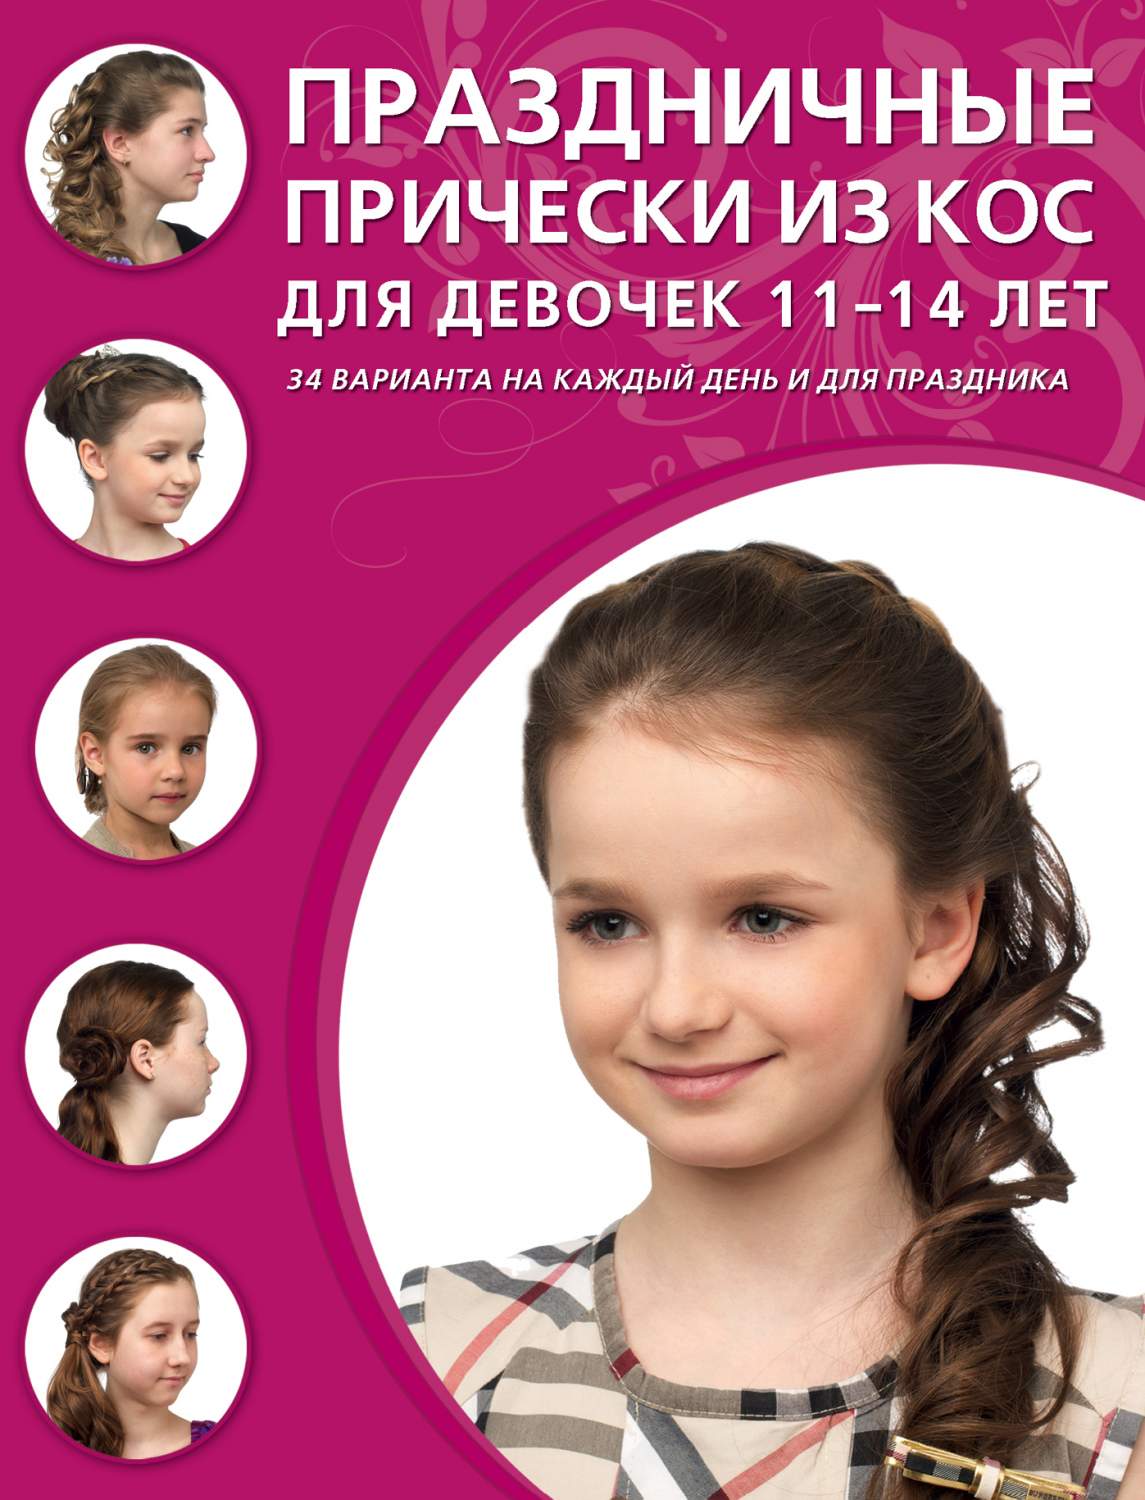 Книга Праздничные прически из кос для Девочек 11-14 лет - купить дома и досуга в интернет-магазинах, цены в Москве на Мегамаркет